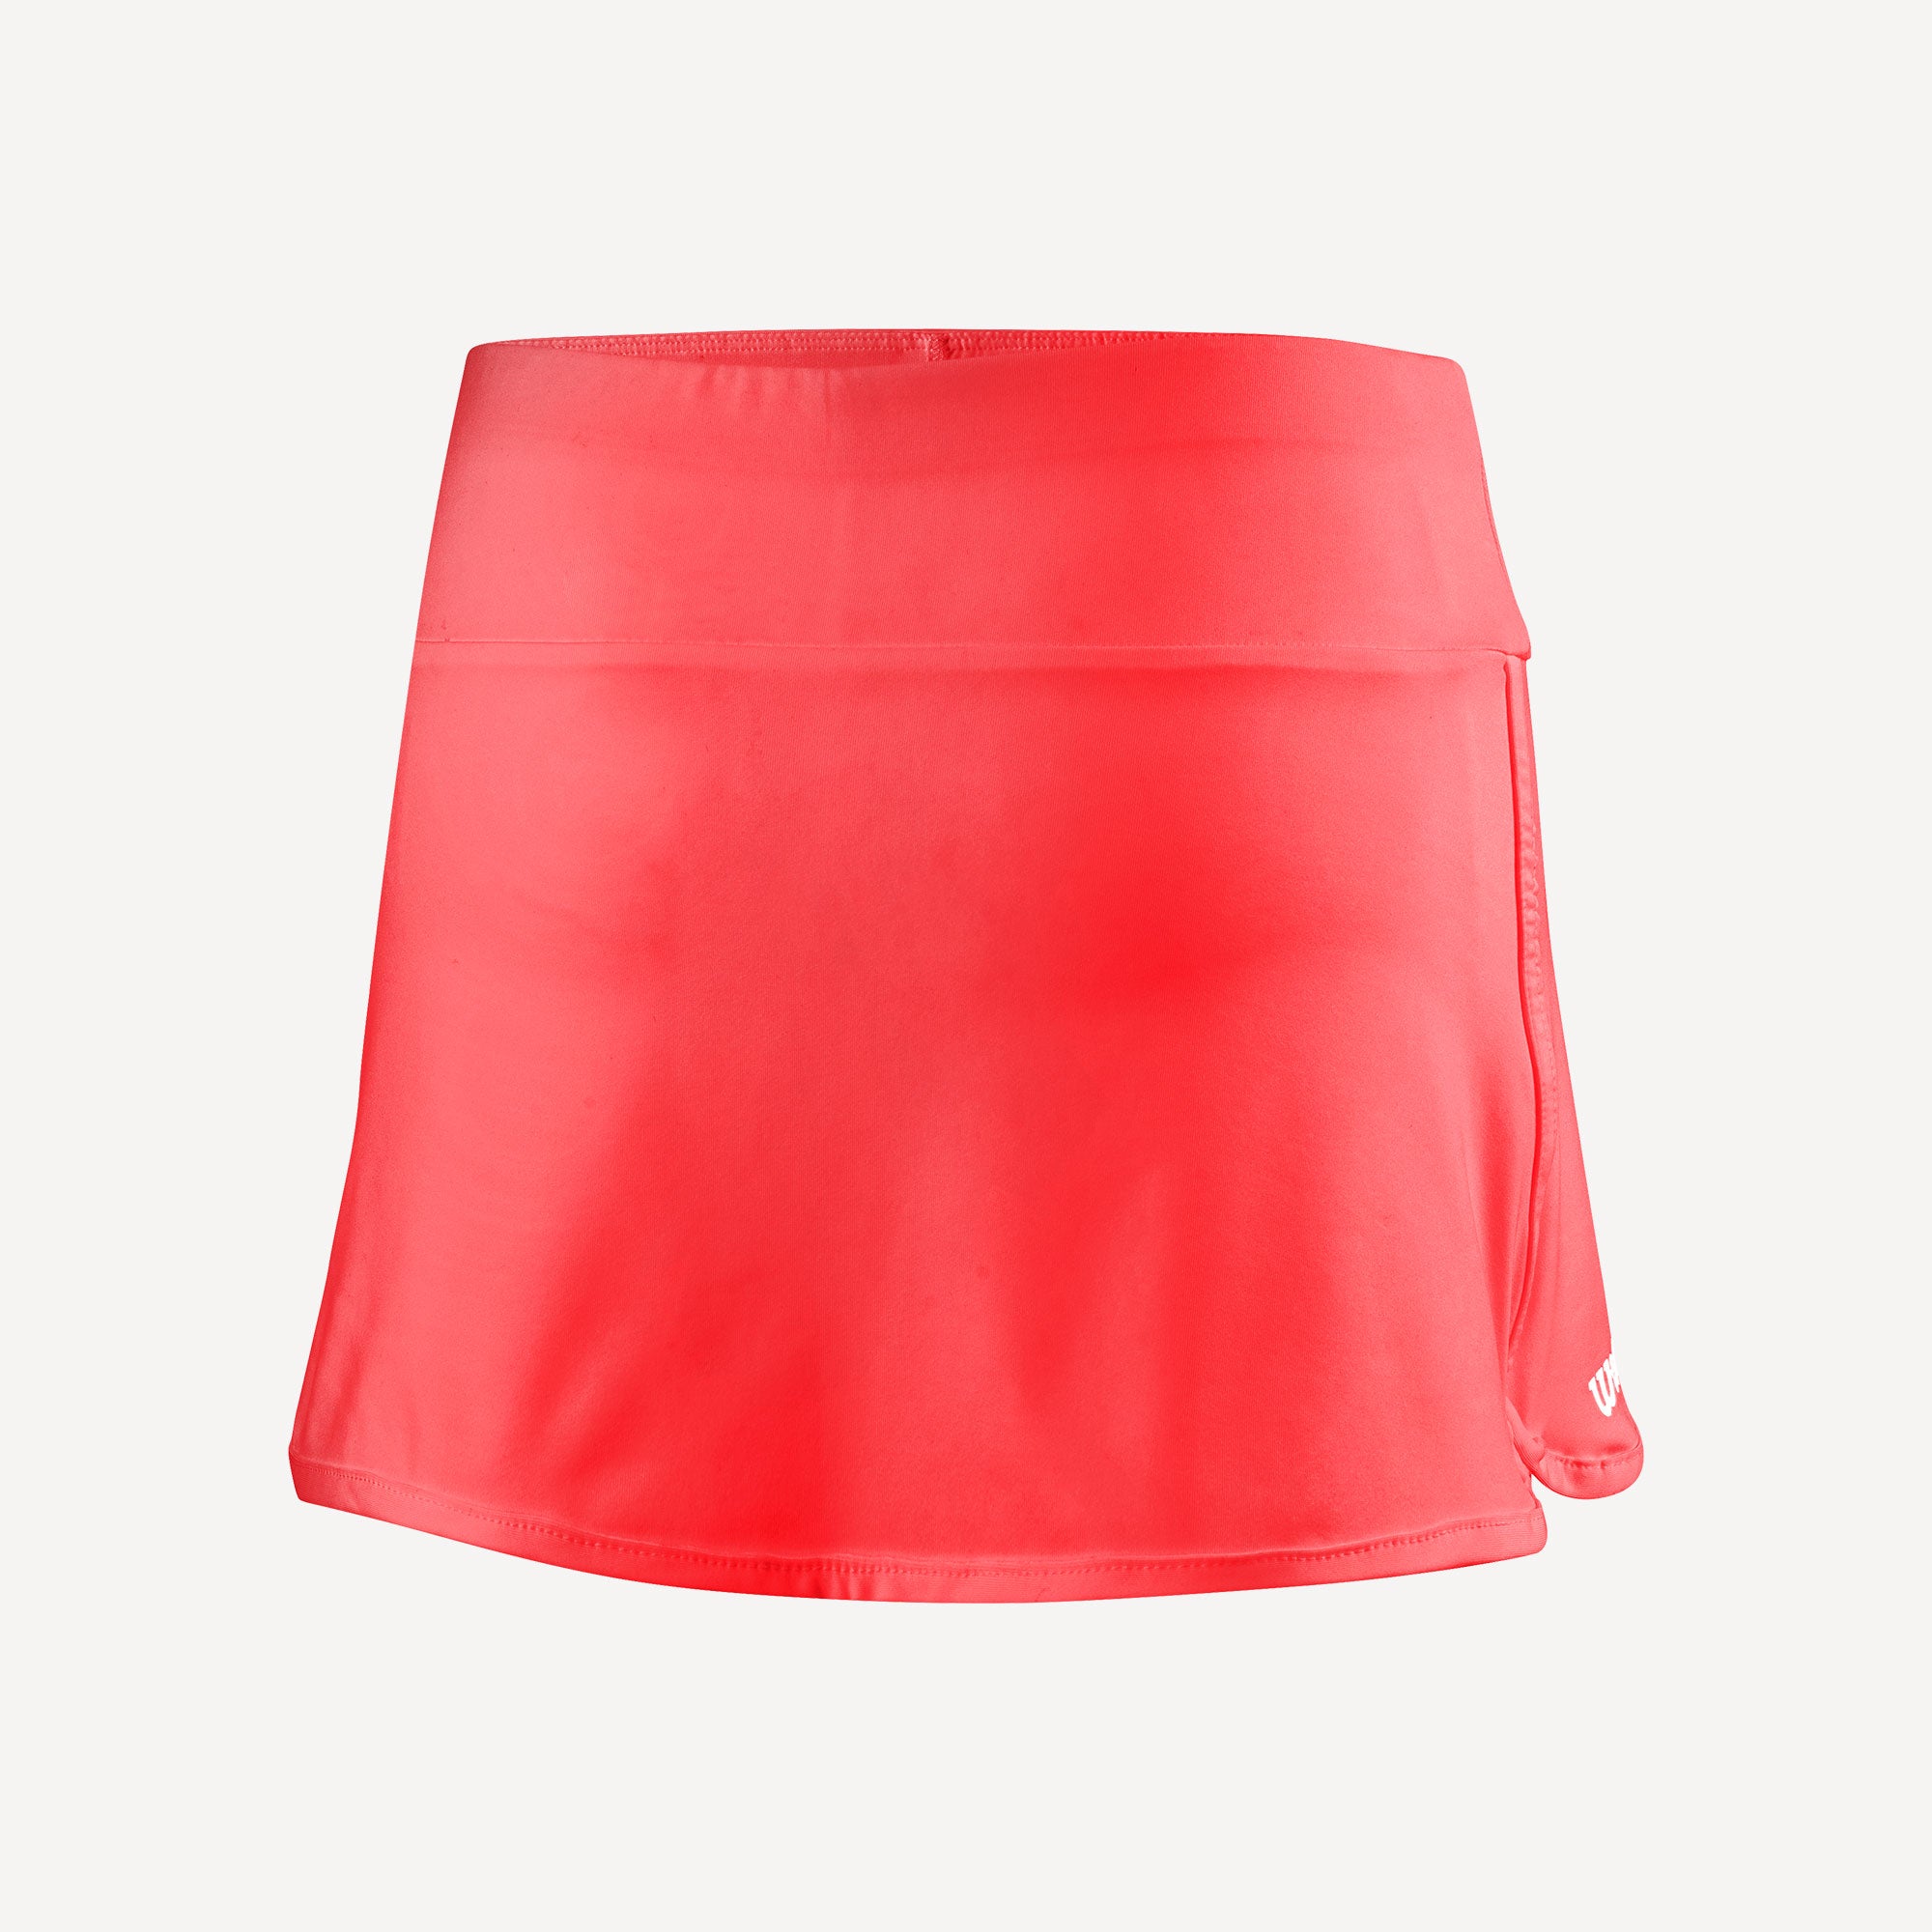 Wilson Team 2 Girls' 11-Inch Tennis Skirt Orange (2)